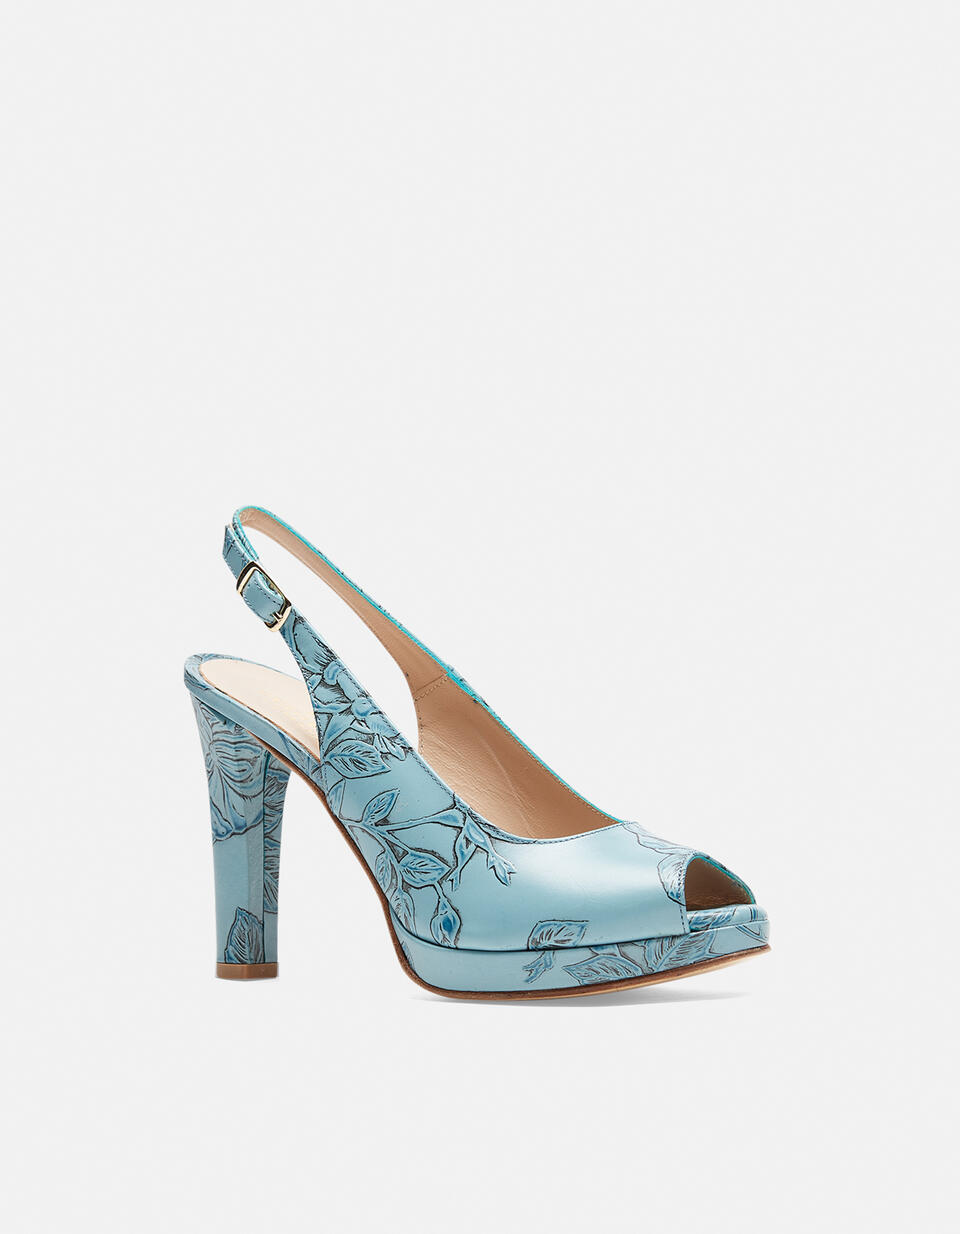 Monroe Mimi sandal - Women Shoes | Shoes Mimì CELESTE - Women Shoes | ShoesCuoieria Fiorentina